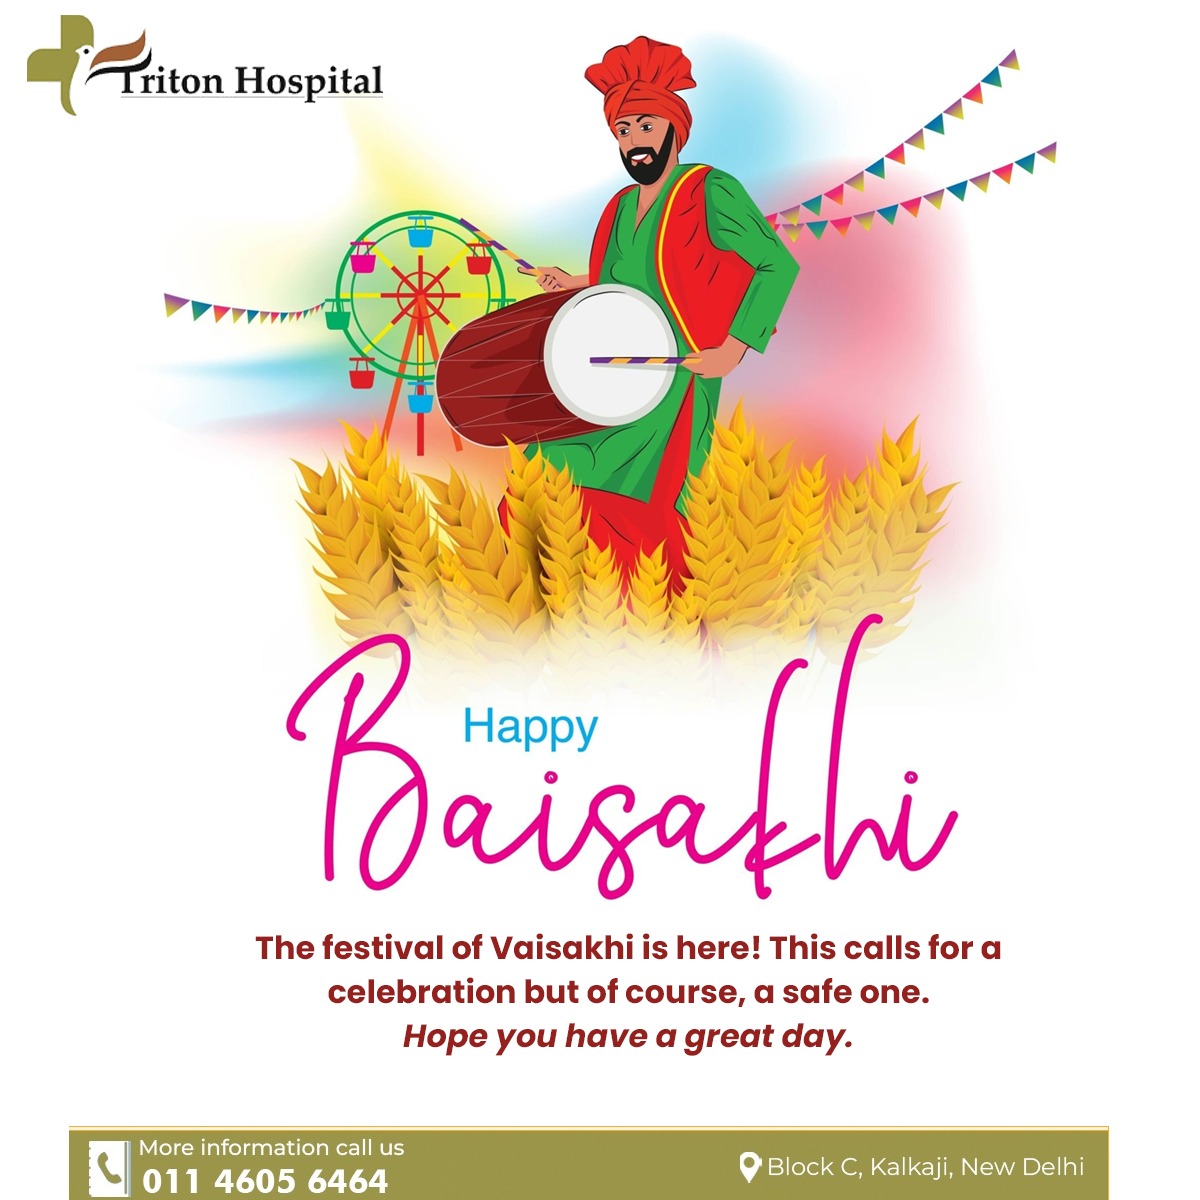 Let's welcome the new year with a new hope and new beginnings. Happy Baisakhi!

#HappyBaisakhi #BaisakhiCelebrations #BaisakhiVibes #BaisakhiFestival #HarvestFestival #PunjabiCulture #BhangraBeats #FolkDance #WaheguruBlessings #ProsperityAndAbundance #BaisakhiFeast...